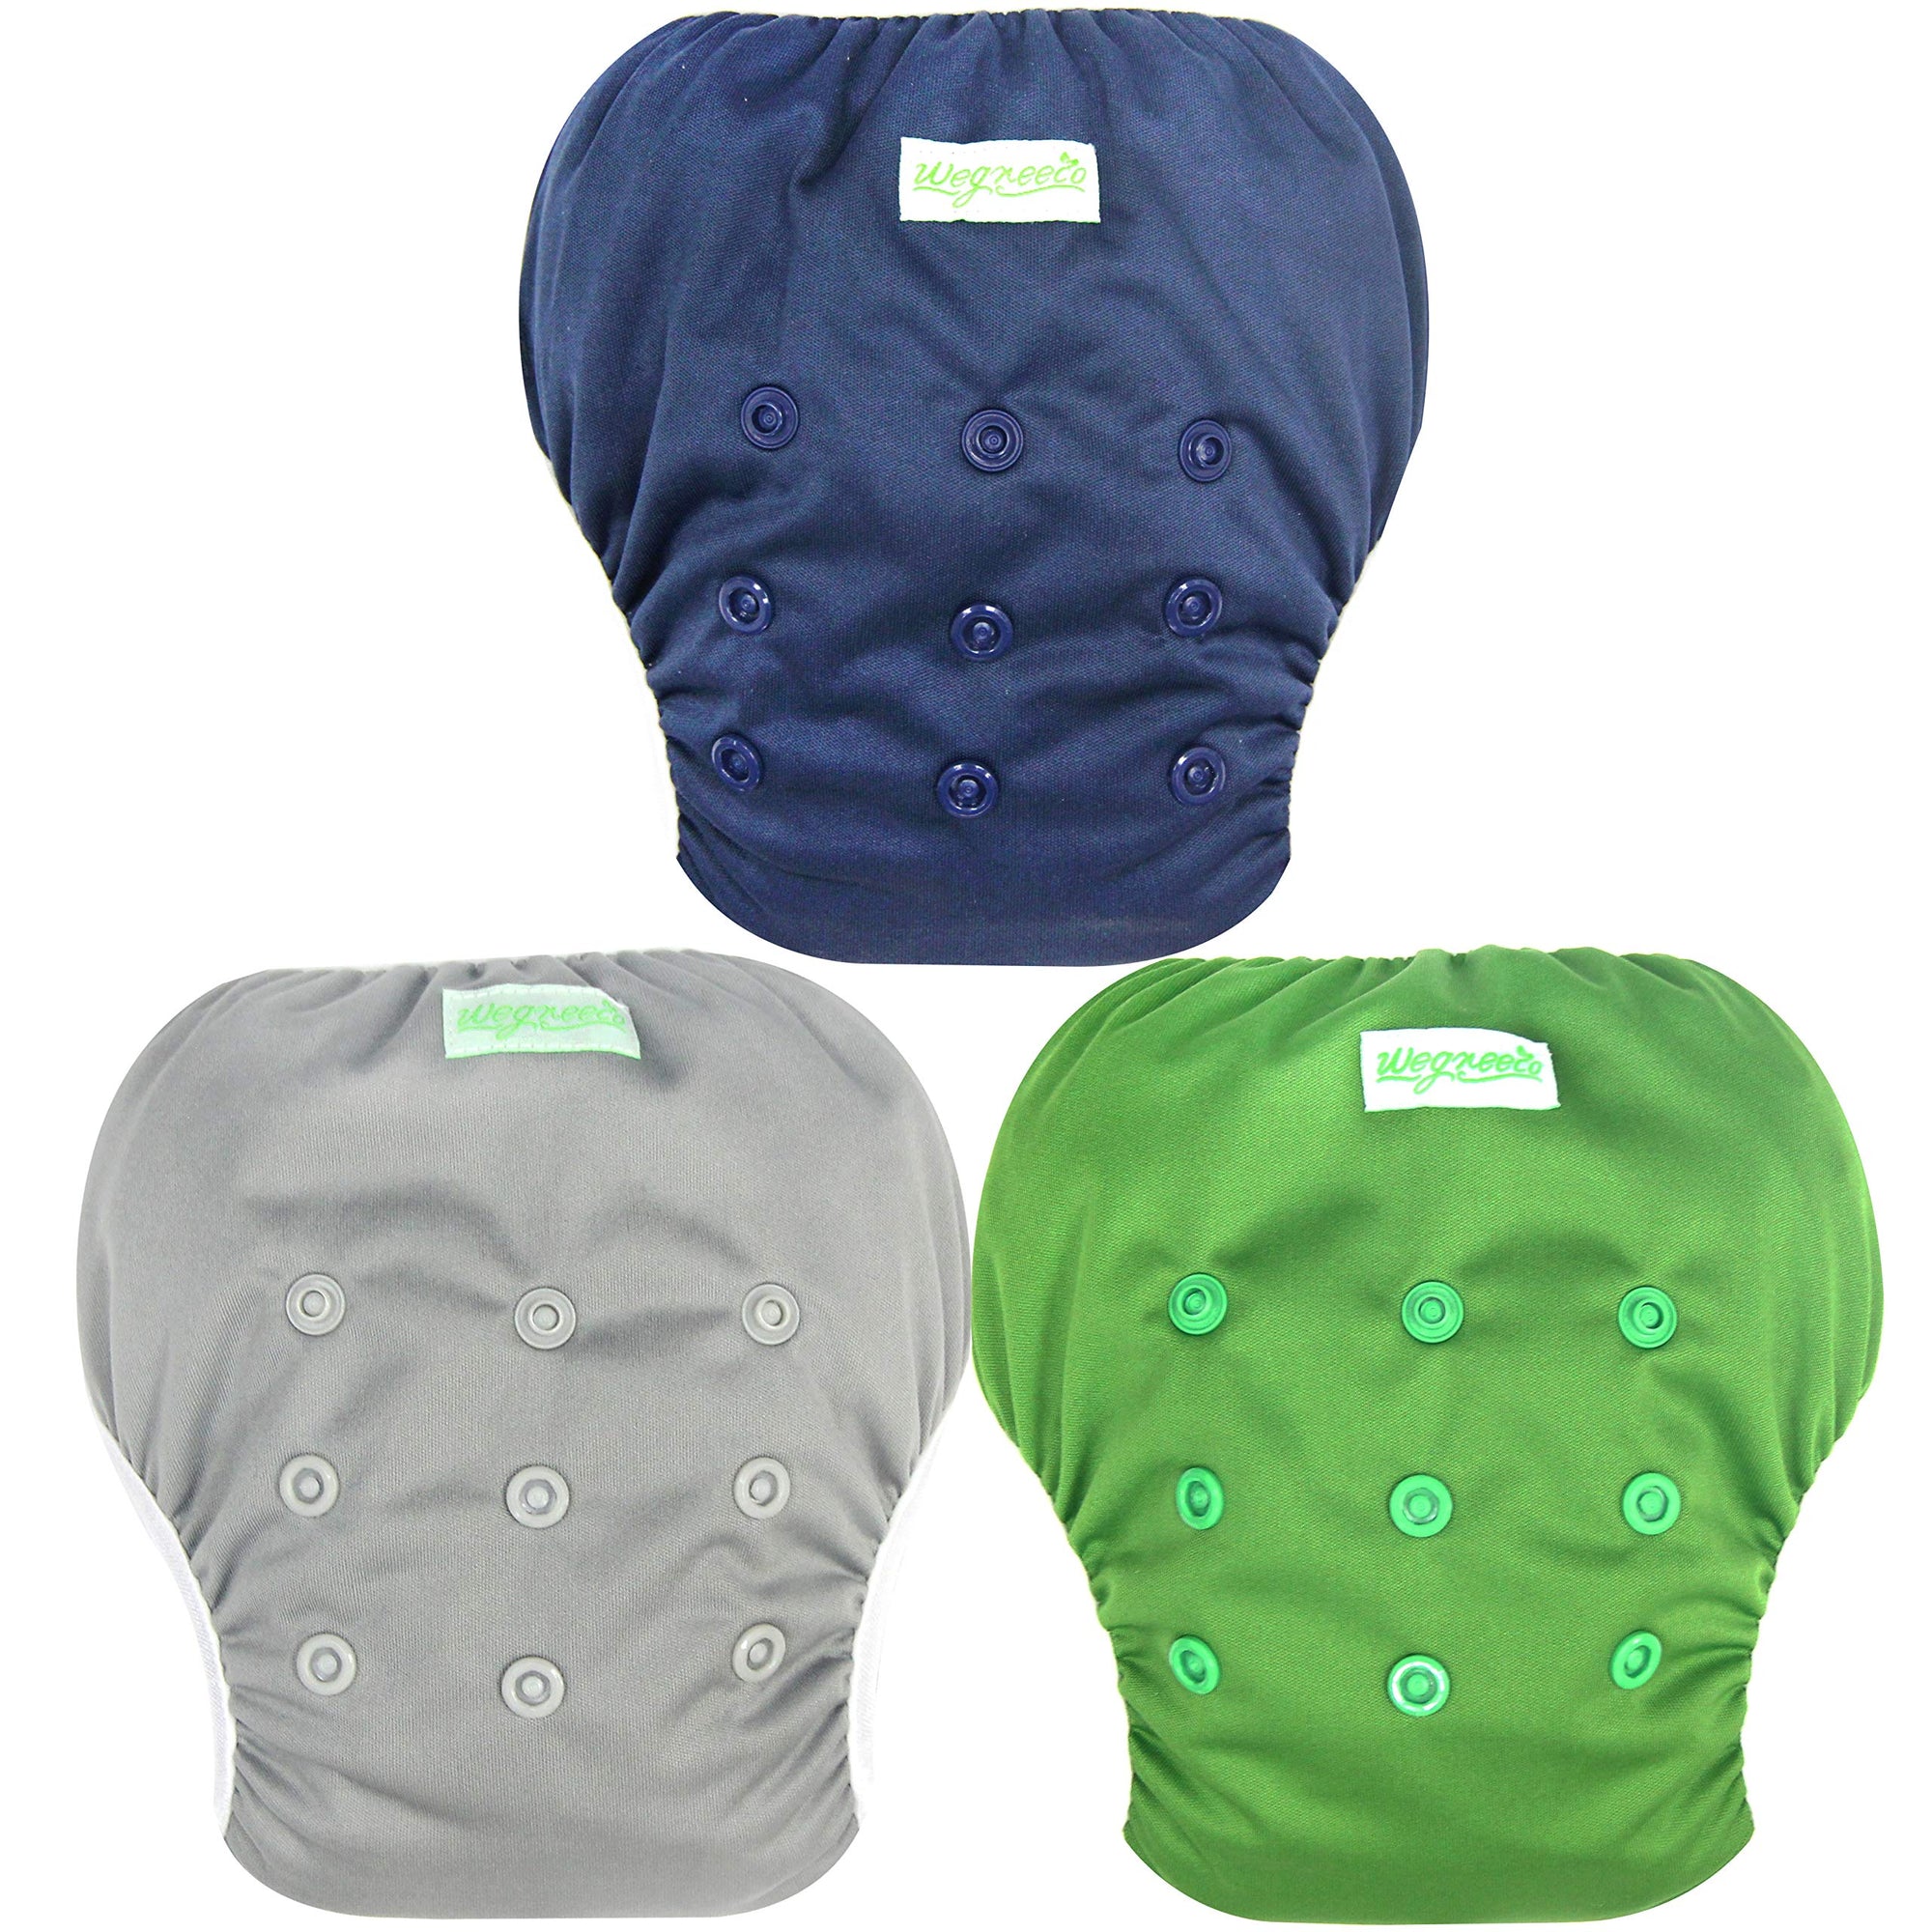 Wegreeco - Pañal de natación reutilizable para bebés y niños pequeños, talla única